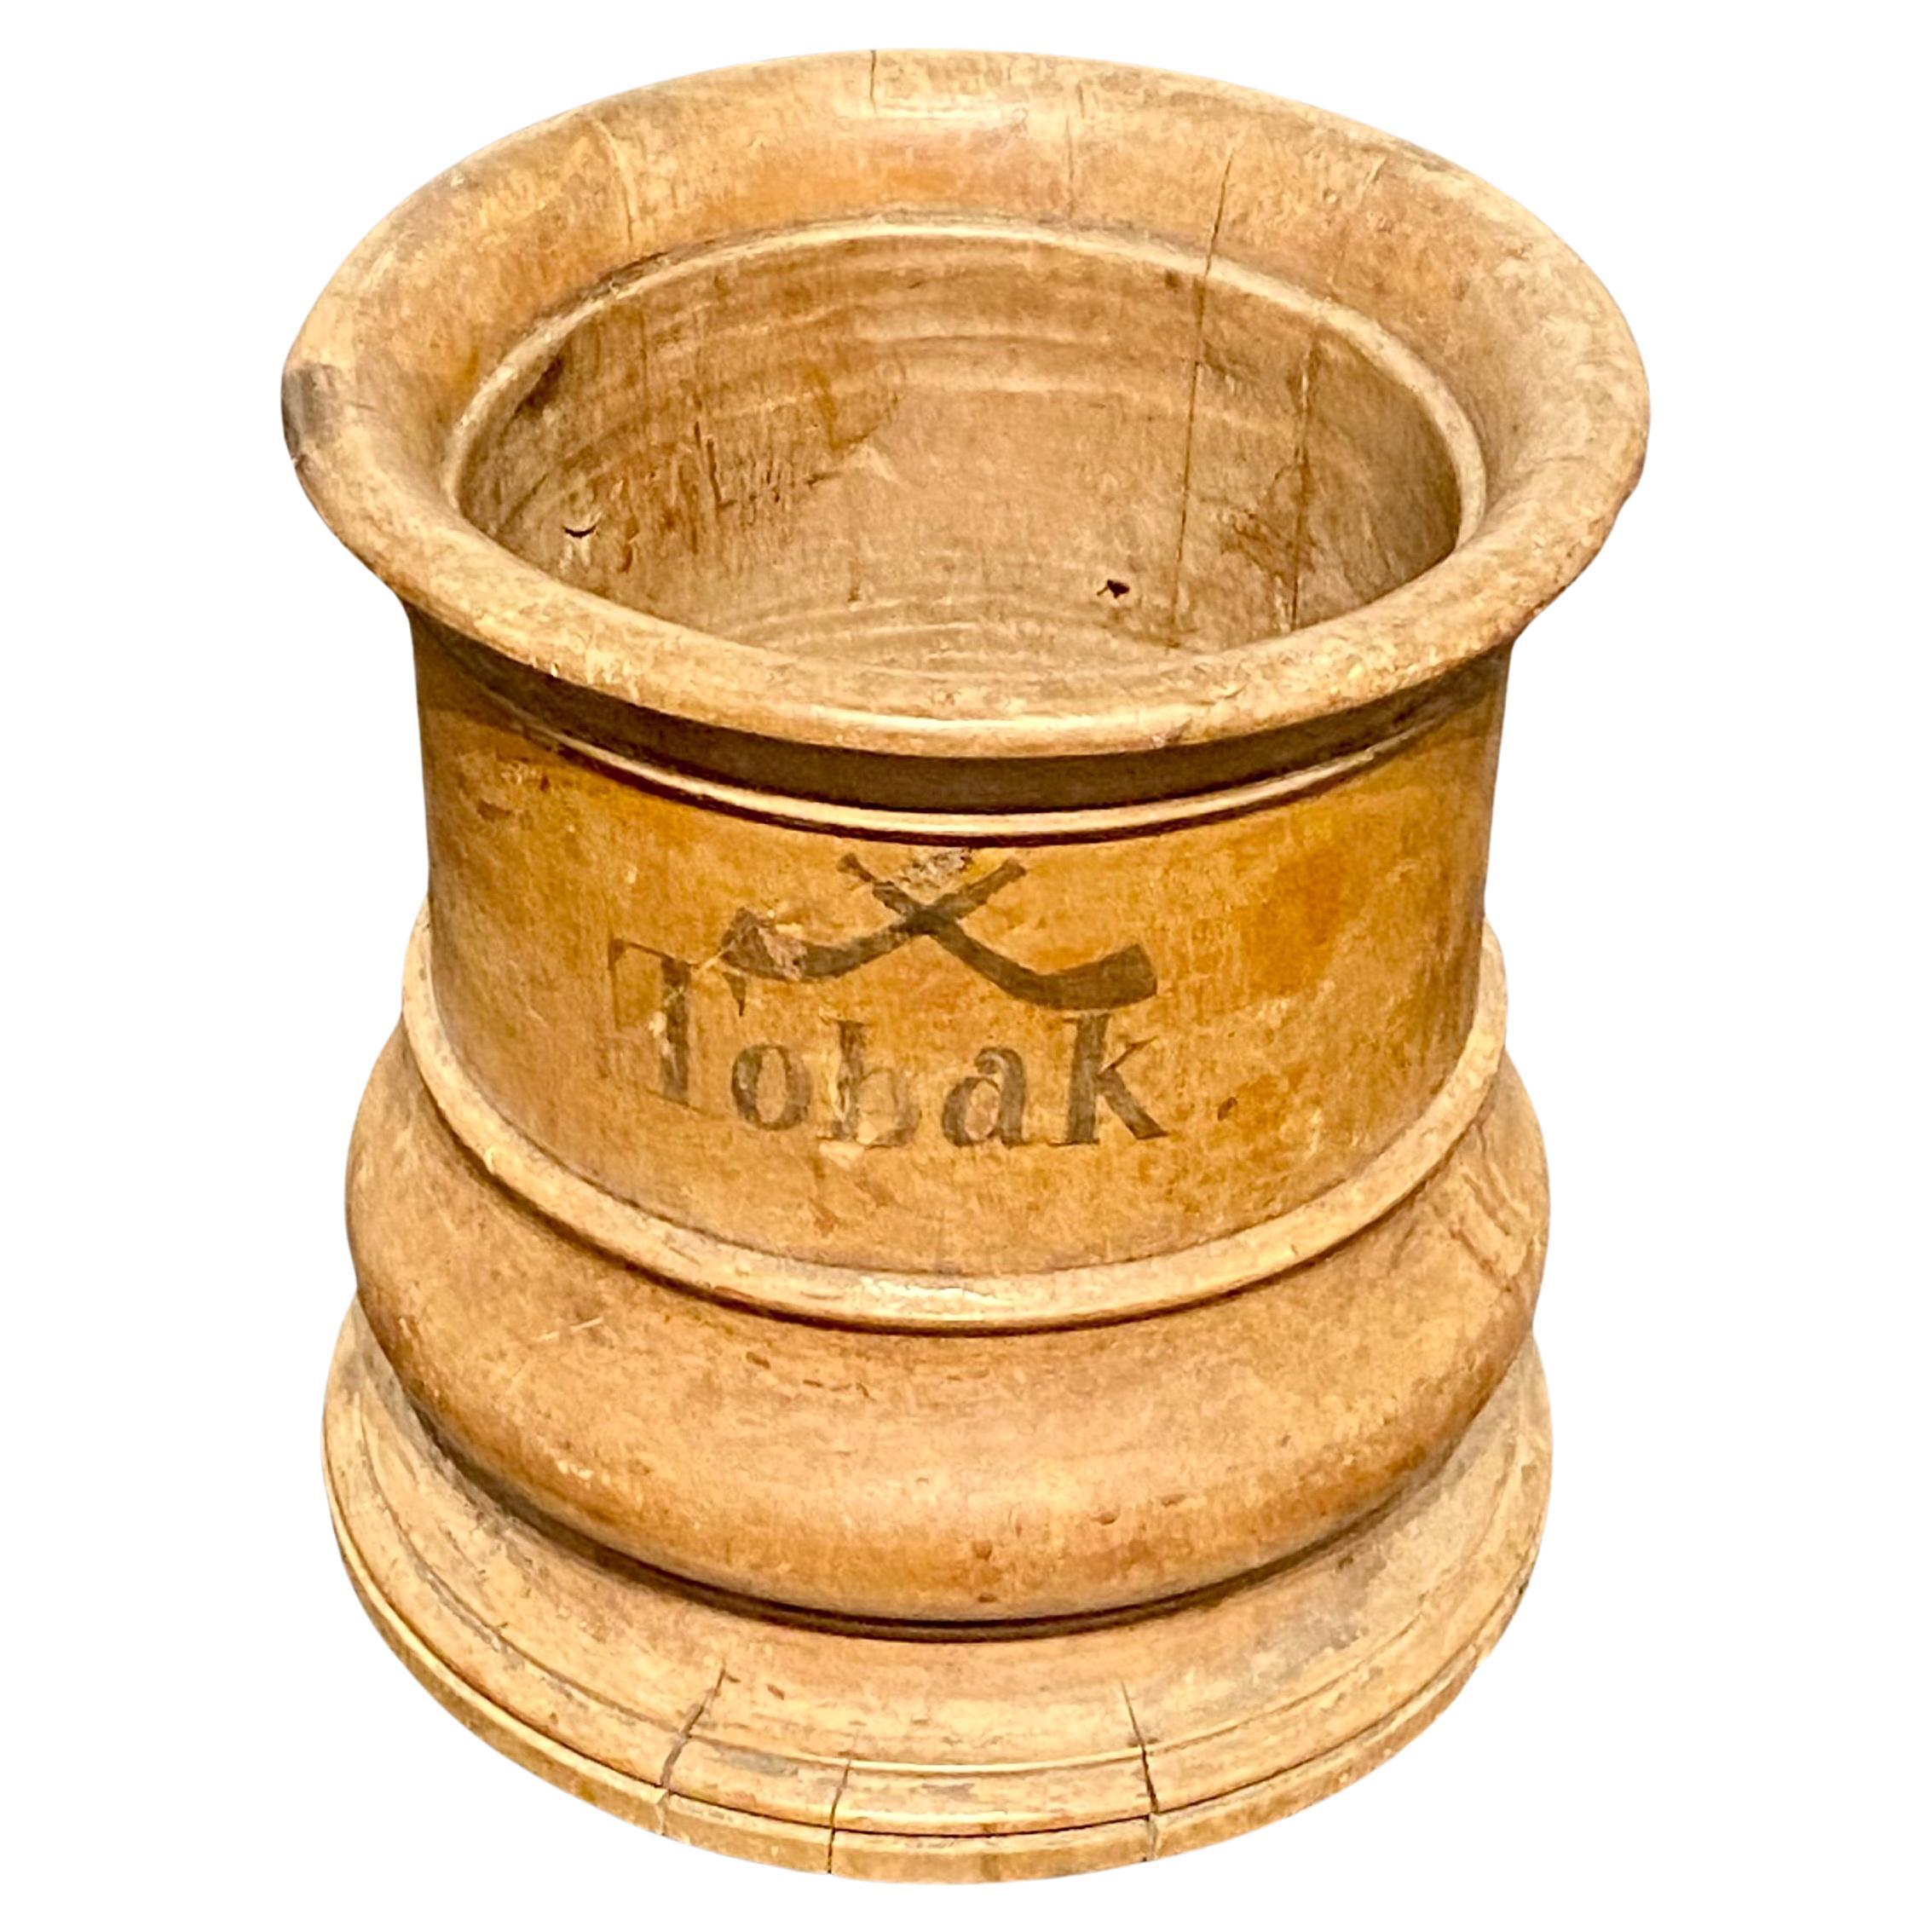 Kleines rundes dänisches Holzgefäß für Tabak, um 1800-1825

Auf einer Seite des Gefäßes sind 